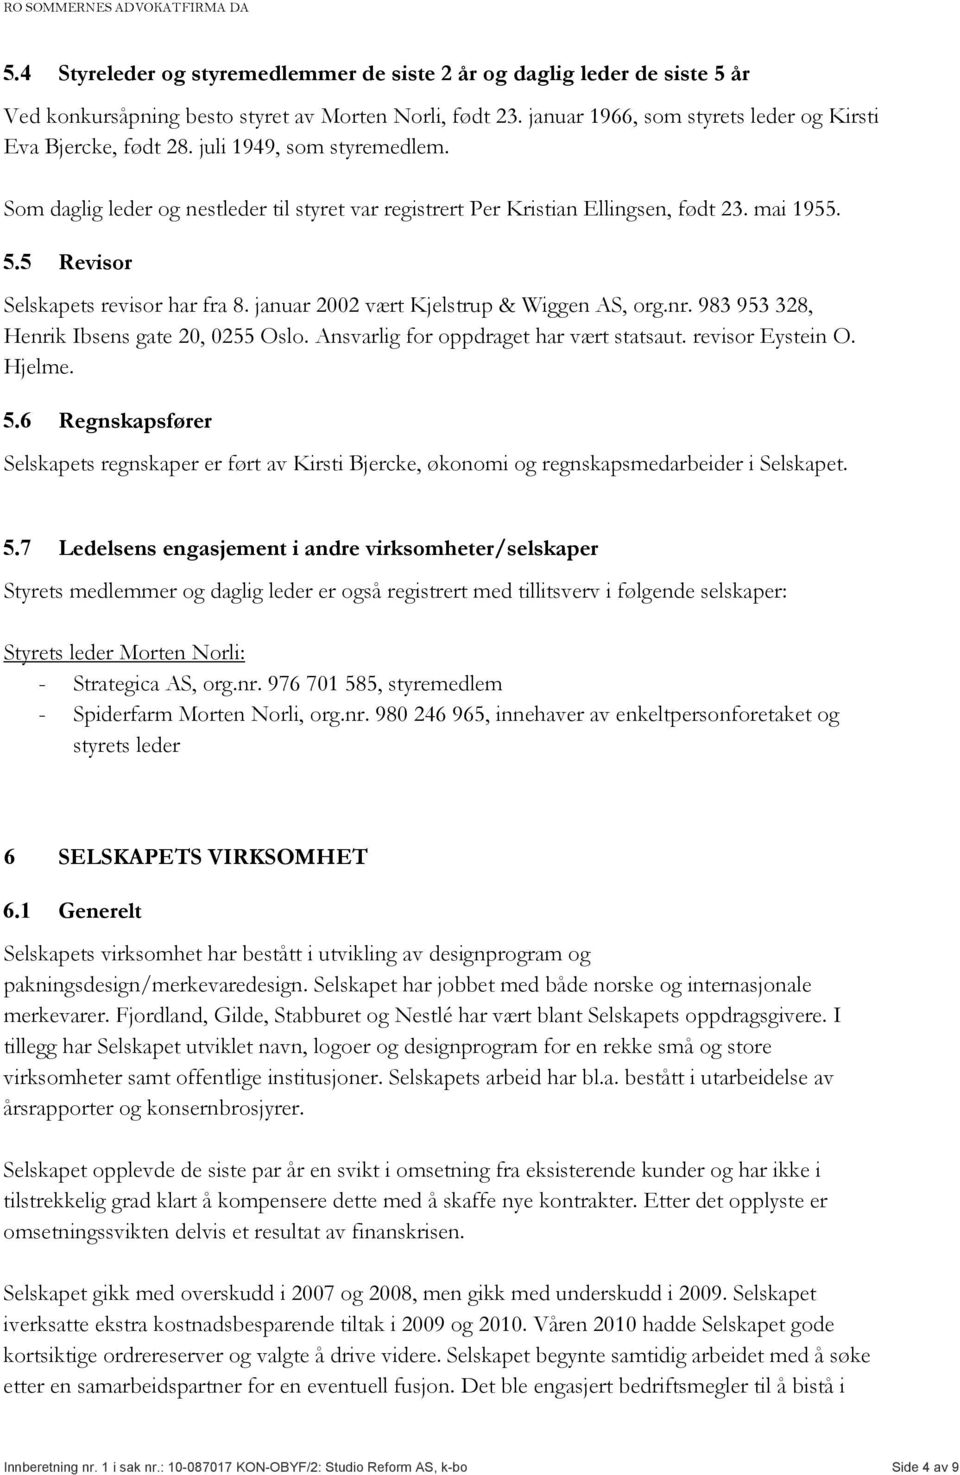 januar 2002 vært Kjelstrup & Wiggen AS, org.nr. 983 953 328, Henrik Ibsens gate 20, 0255 Oslo. Ansvarlig for oppdraget har vært statsaut. revisor Eystein O. Hjelme. 5.